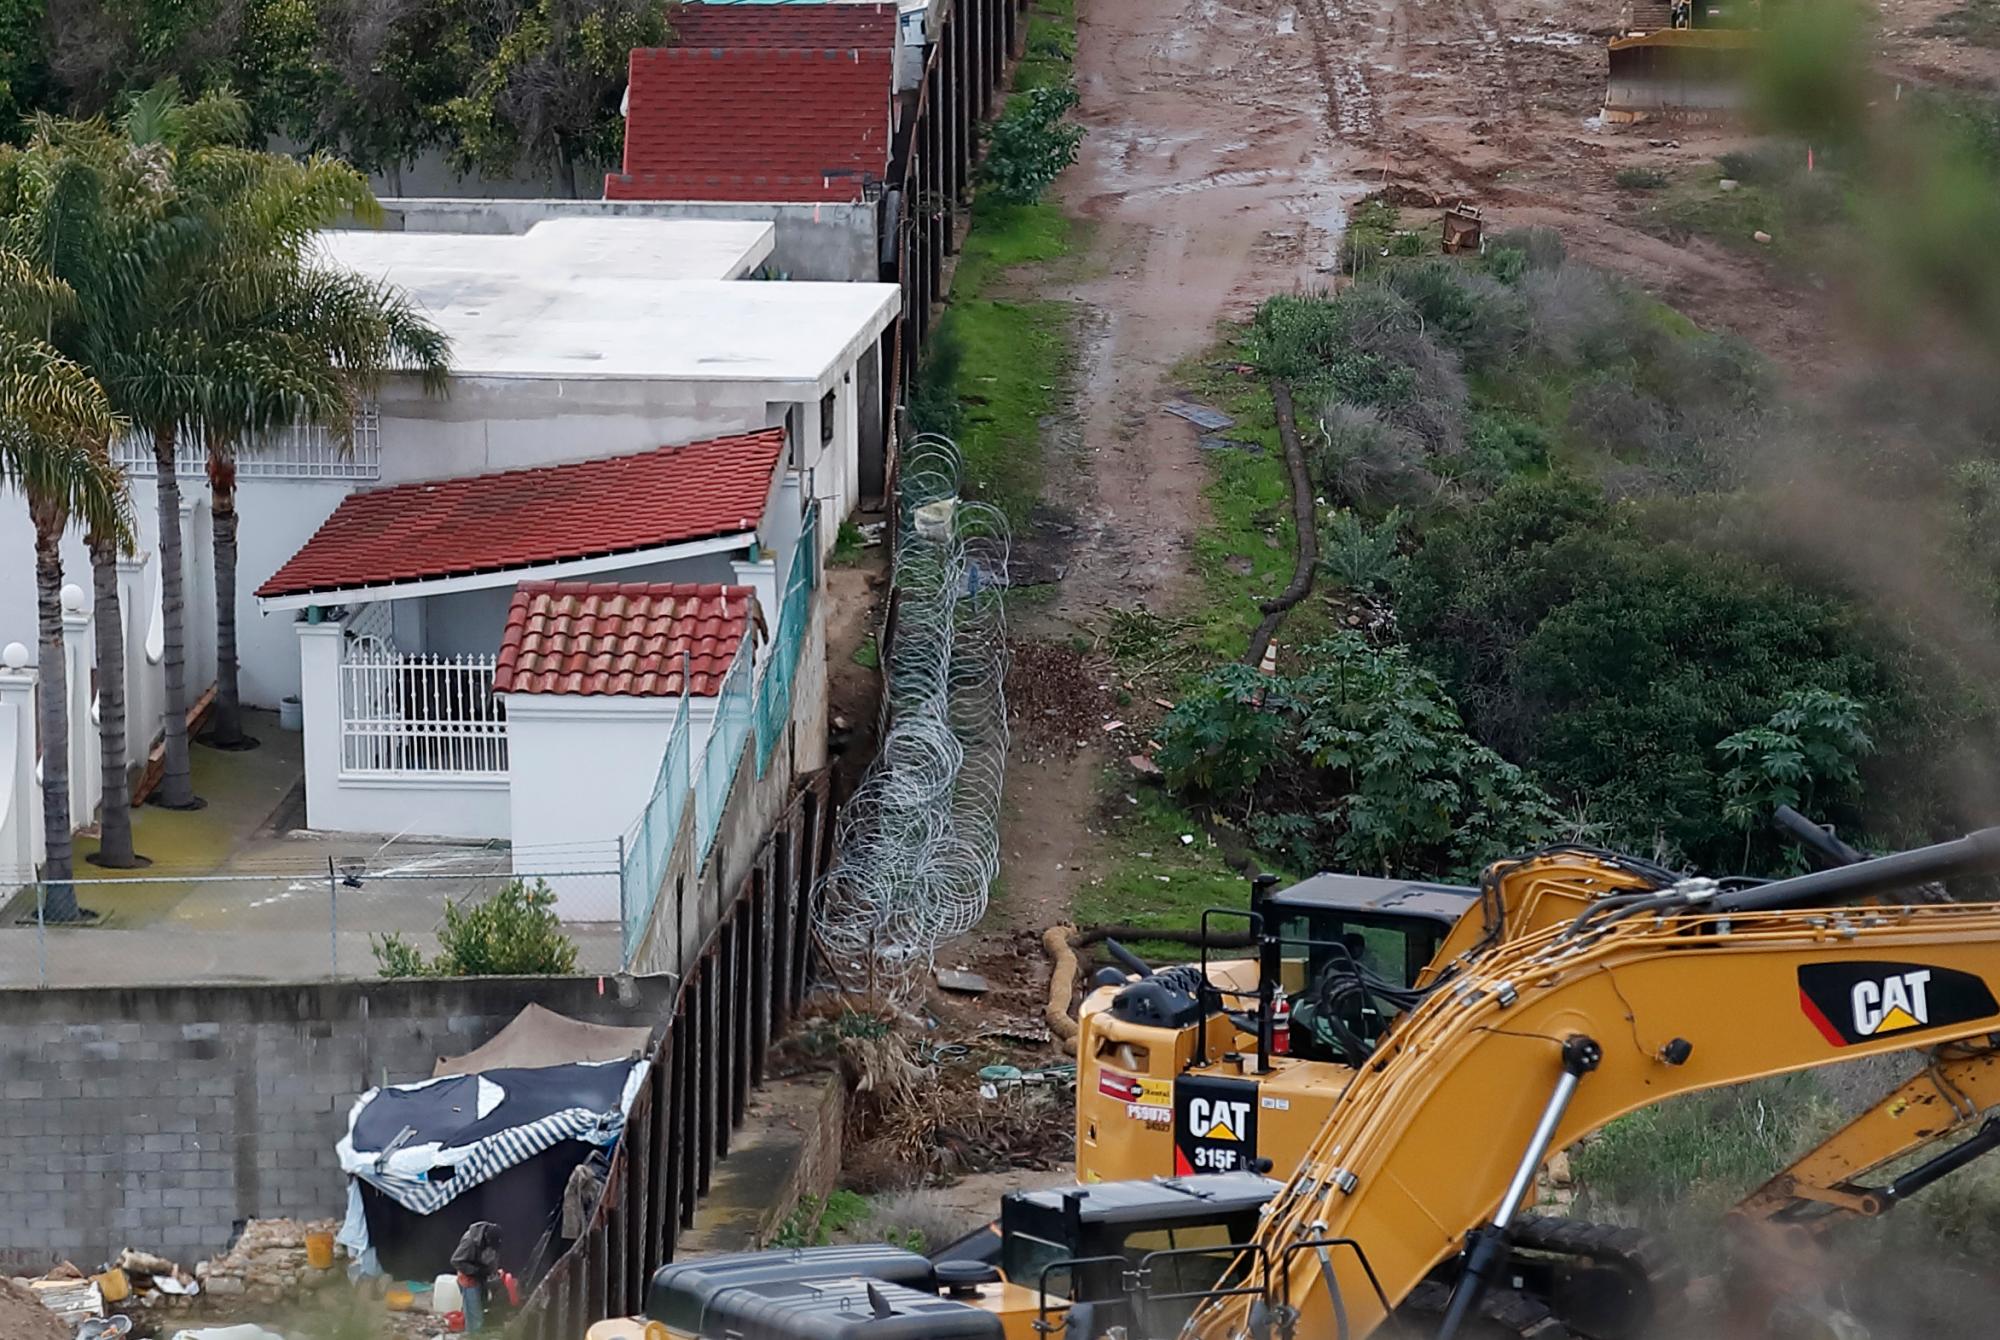  Estructuras en Tijuana, México, a la izquierda de la sección más antigua del muro fronterizo, ya que la maquinaria está preparada para continuar el reemplazo de la pared por nuevas secciones, en San Diego. Funcionarios de la patrulla fronteriza dicen que algunas casas y estructuras mexicanas invaden el suelo de Estados Unidos y plantean un dilema para las autoridades cuando reemplazan la pared.